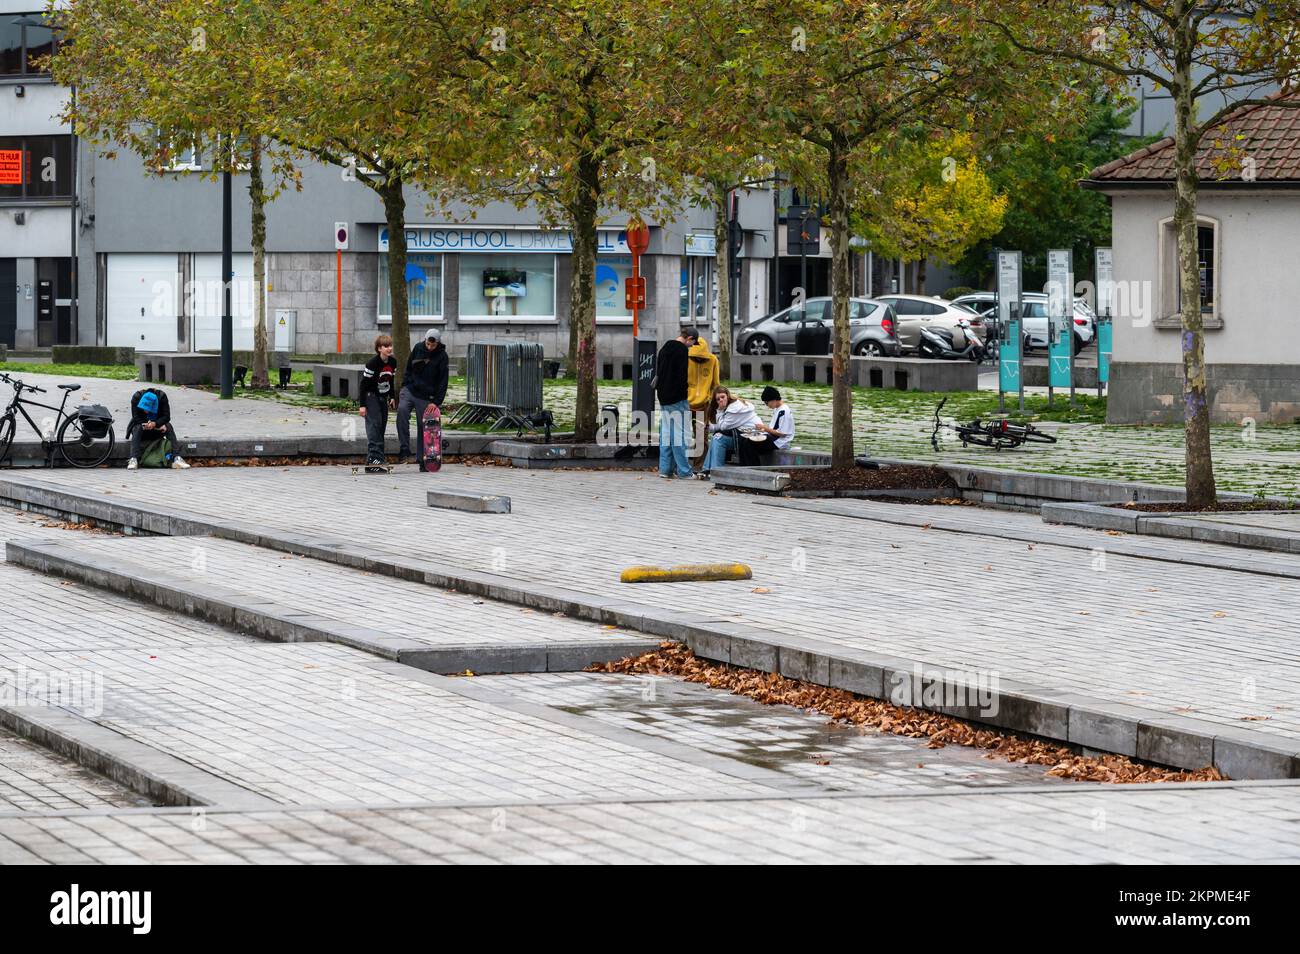 Aalst, Brabante Fiammingo, Belgio - 11 02 2022 - giovani nella piazza della stazione ferroviaria Foto Stock